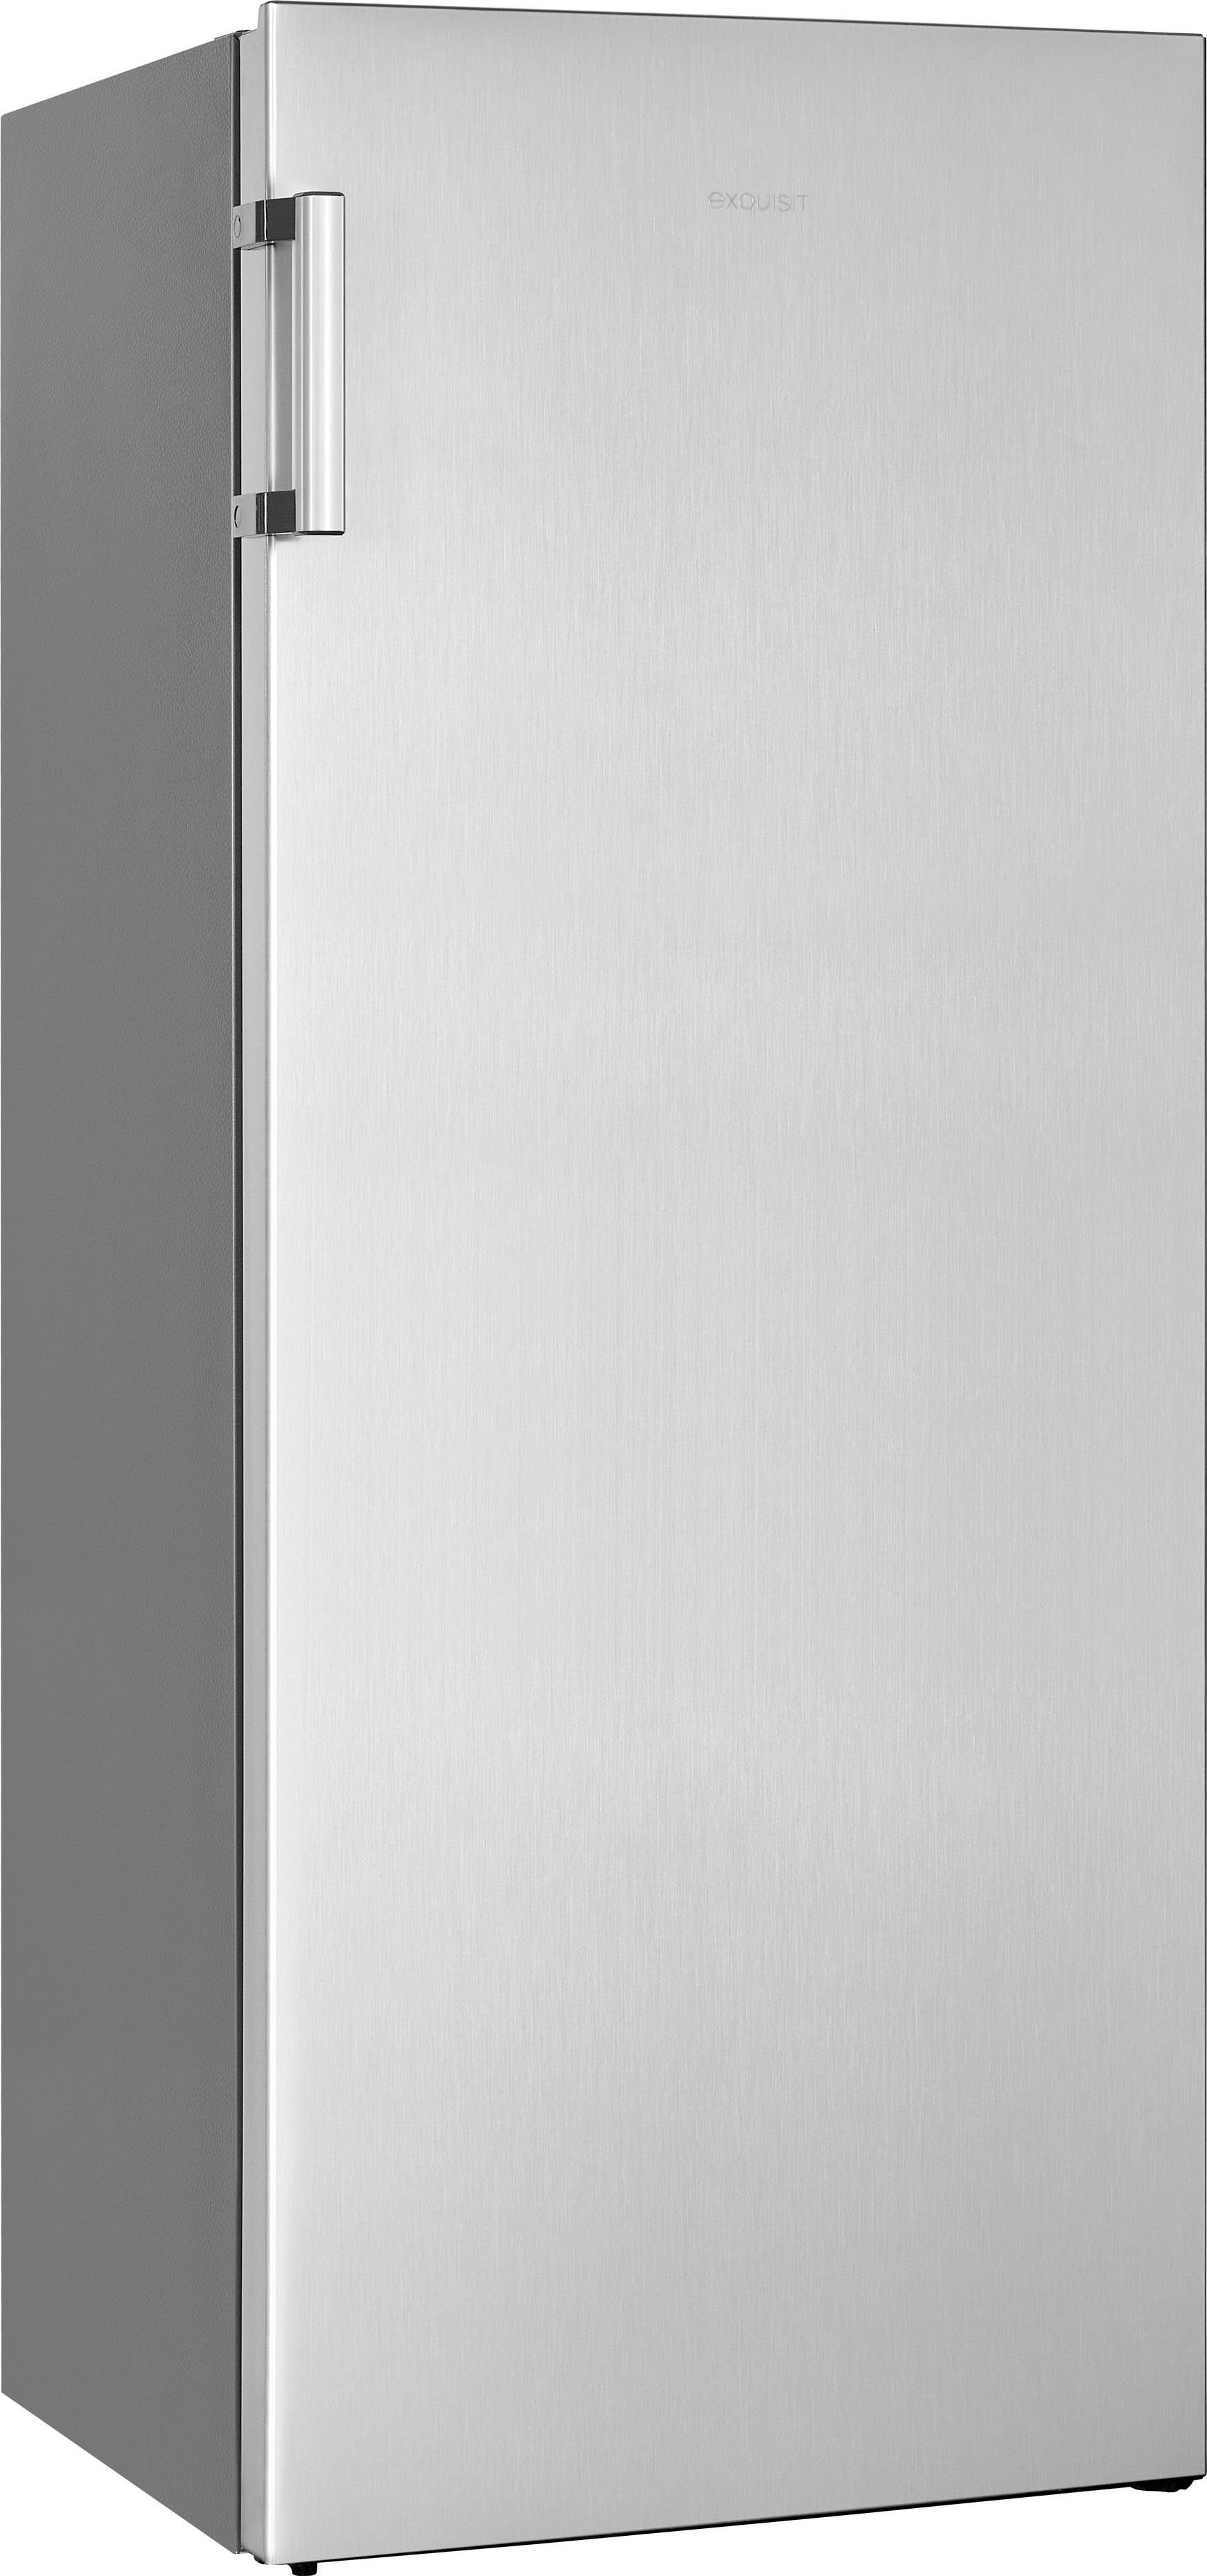 hoch, Volumen cm KS320-V-H-010E, 242 cm Vollraumkühlschrank exquisit 143,4 L breit, 55